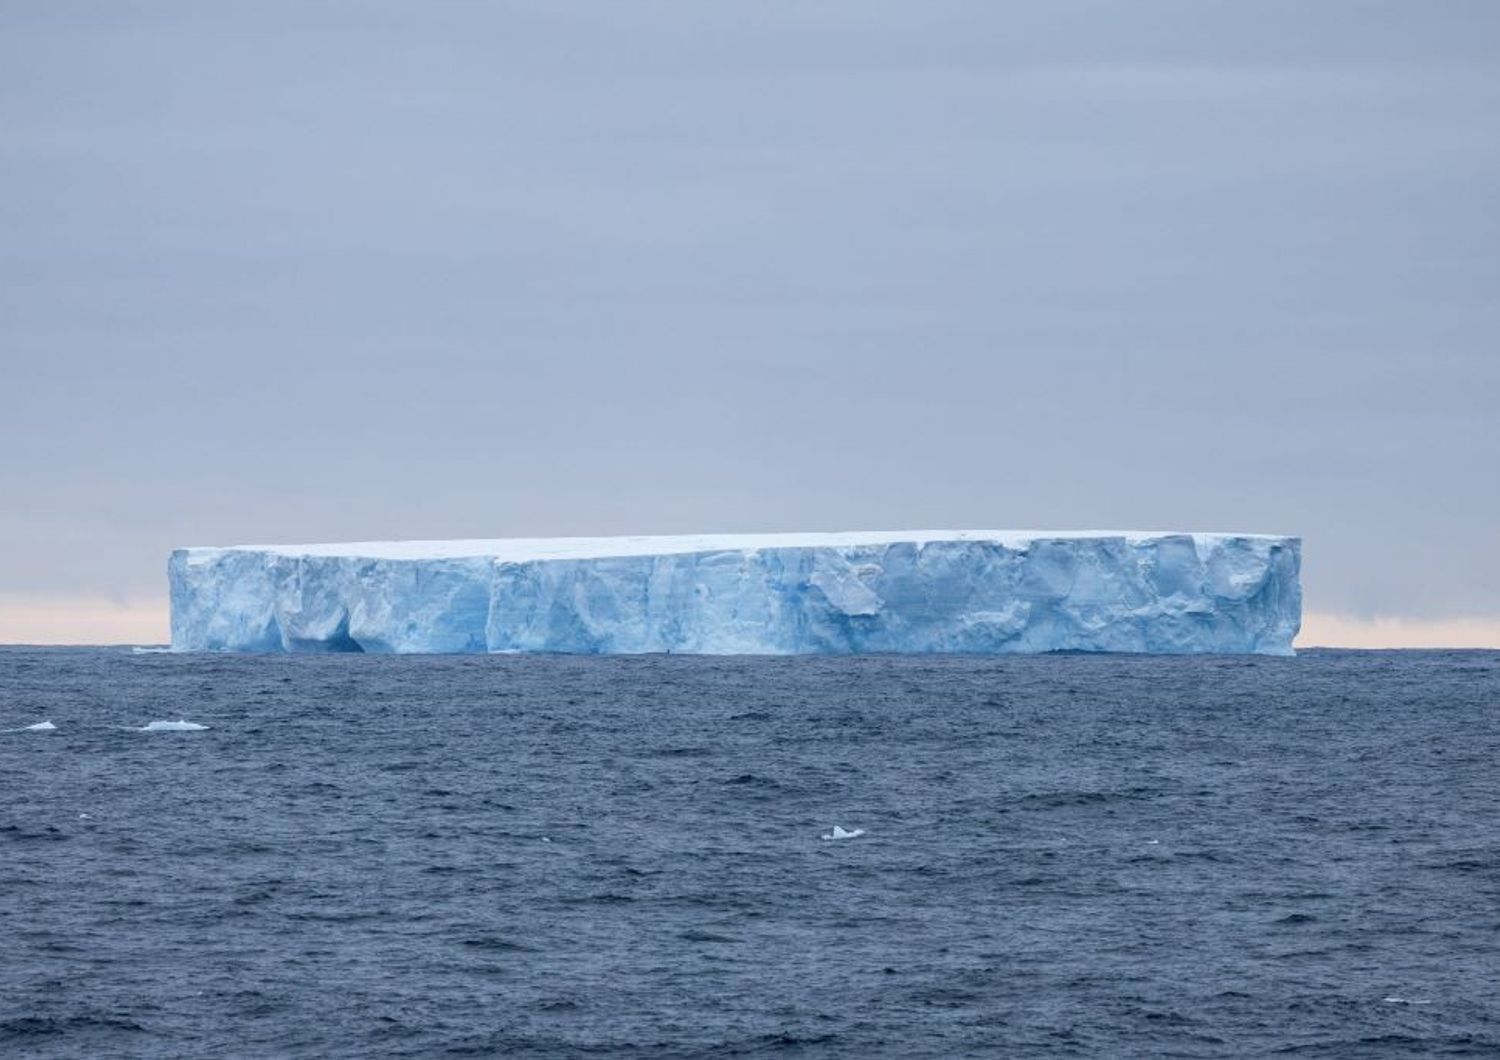 Il più grande iceberg del mondo che si trova ai confini dell'Atlantico